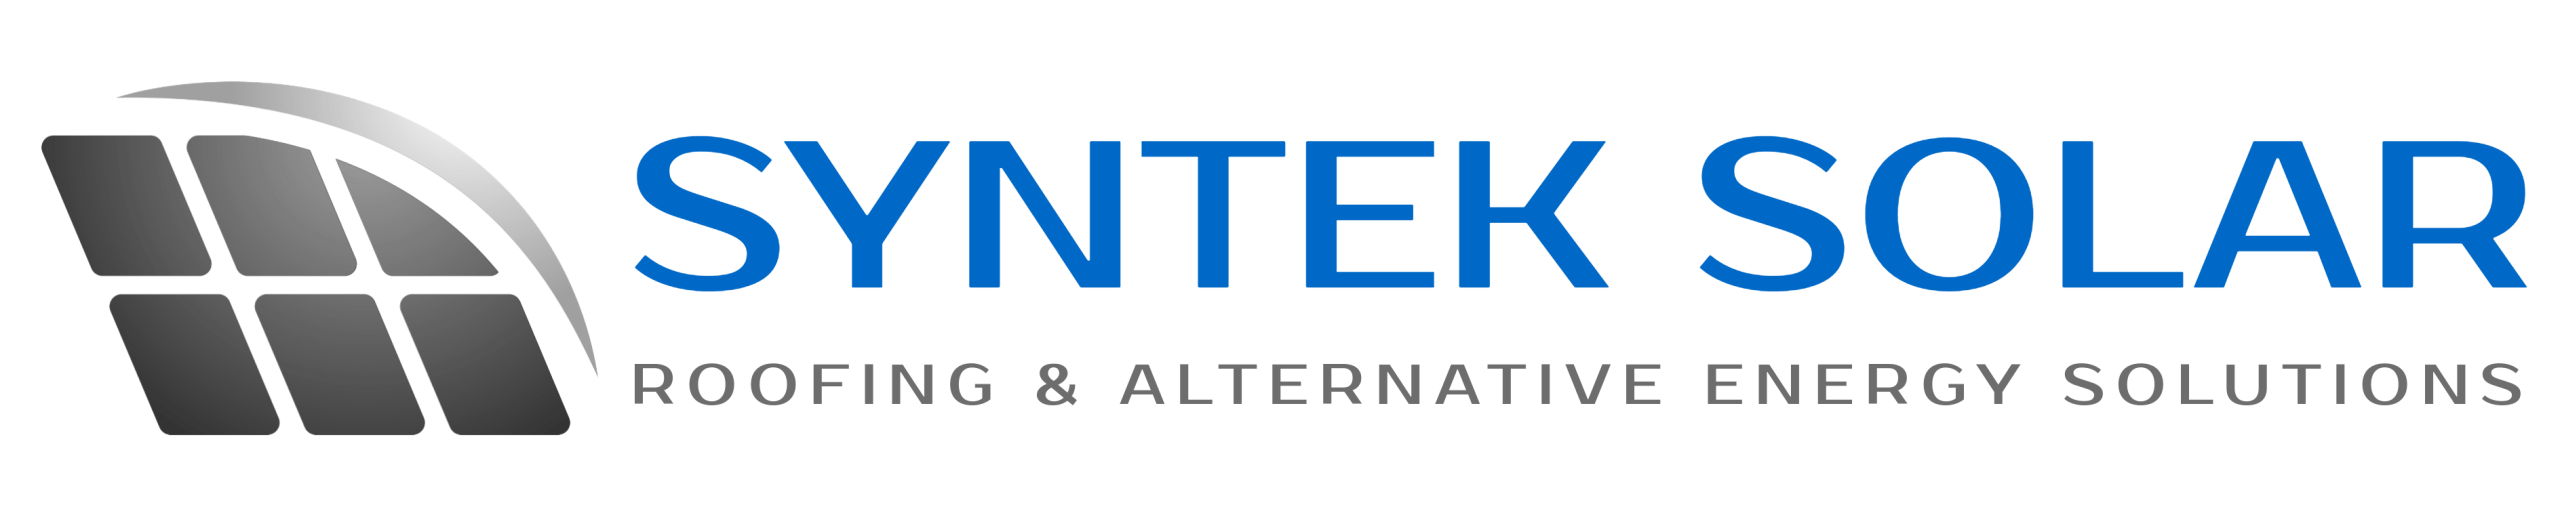 syntek-solar-logo